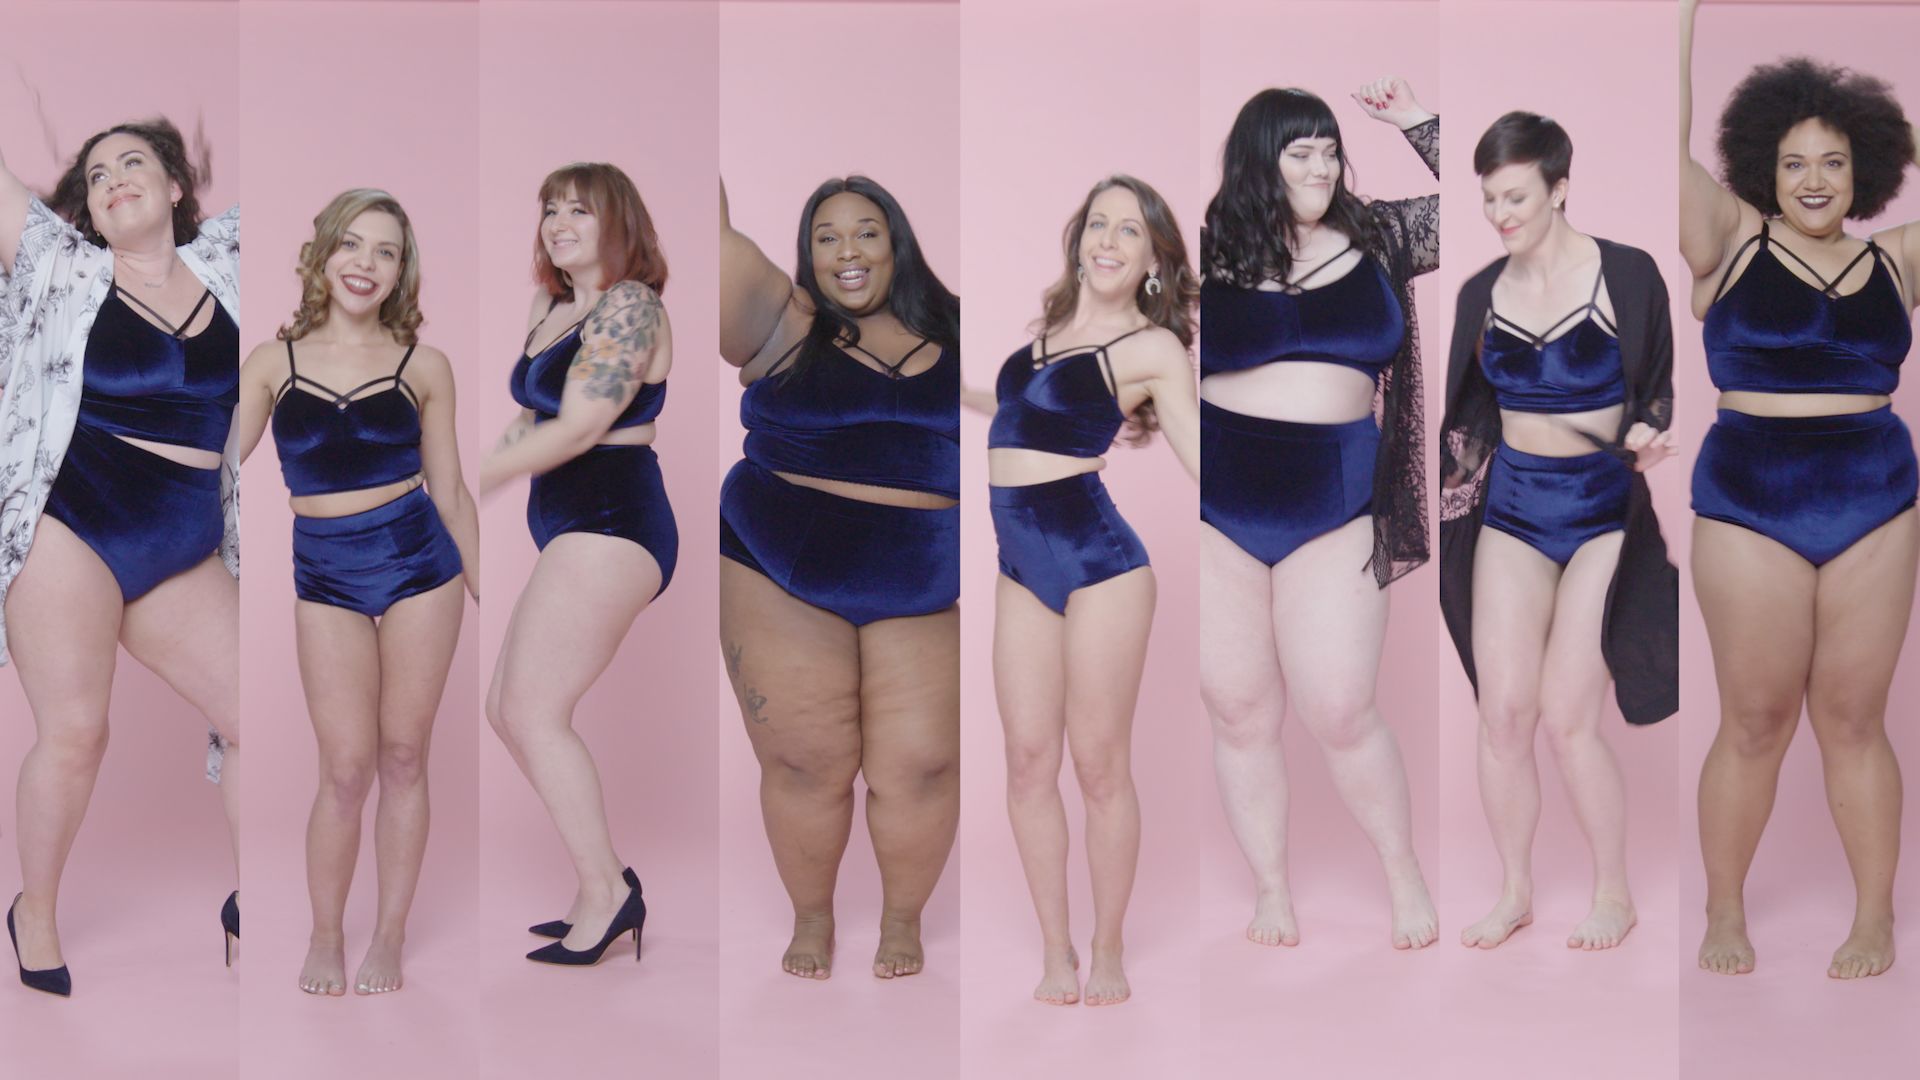 Women sizes 0 through 26 model the same lingerie